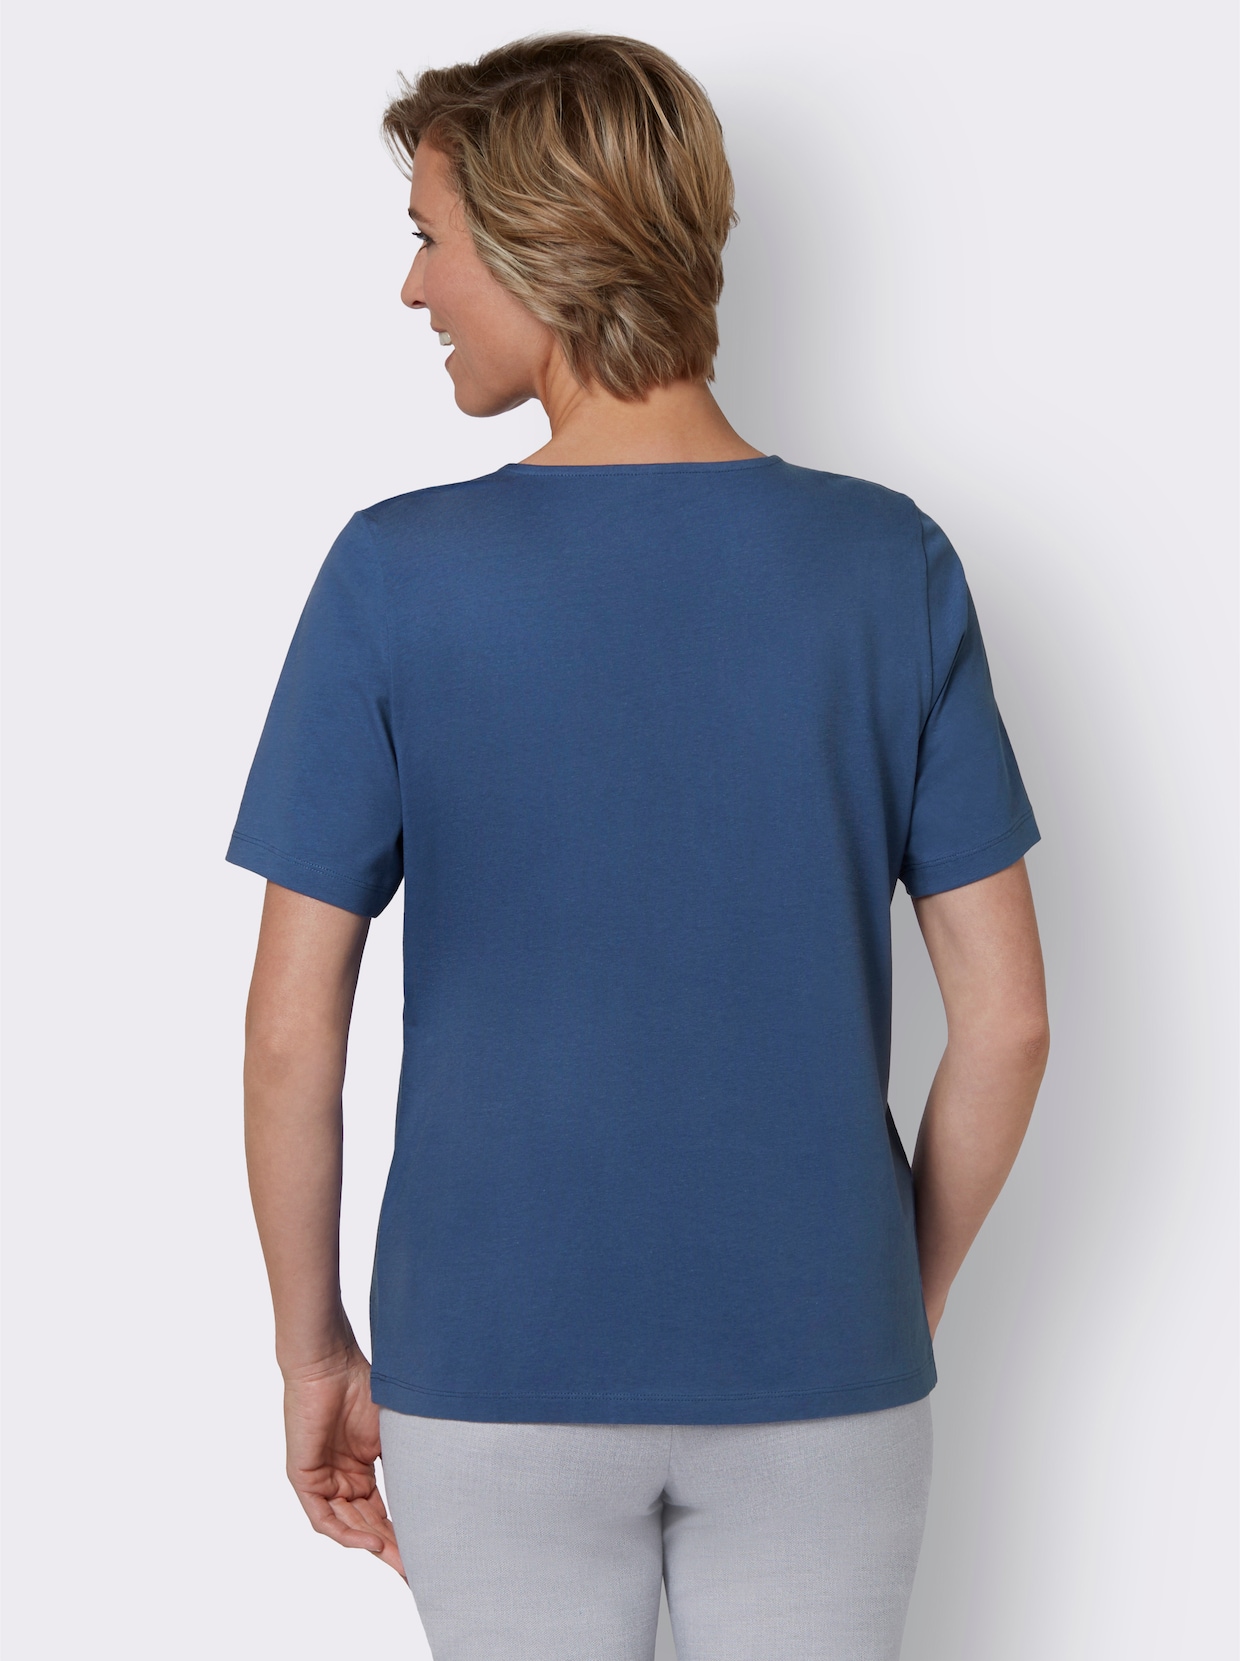 Tričko s krátkým rukávem - džínová modrá